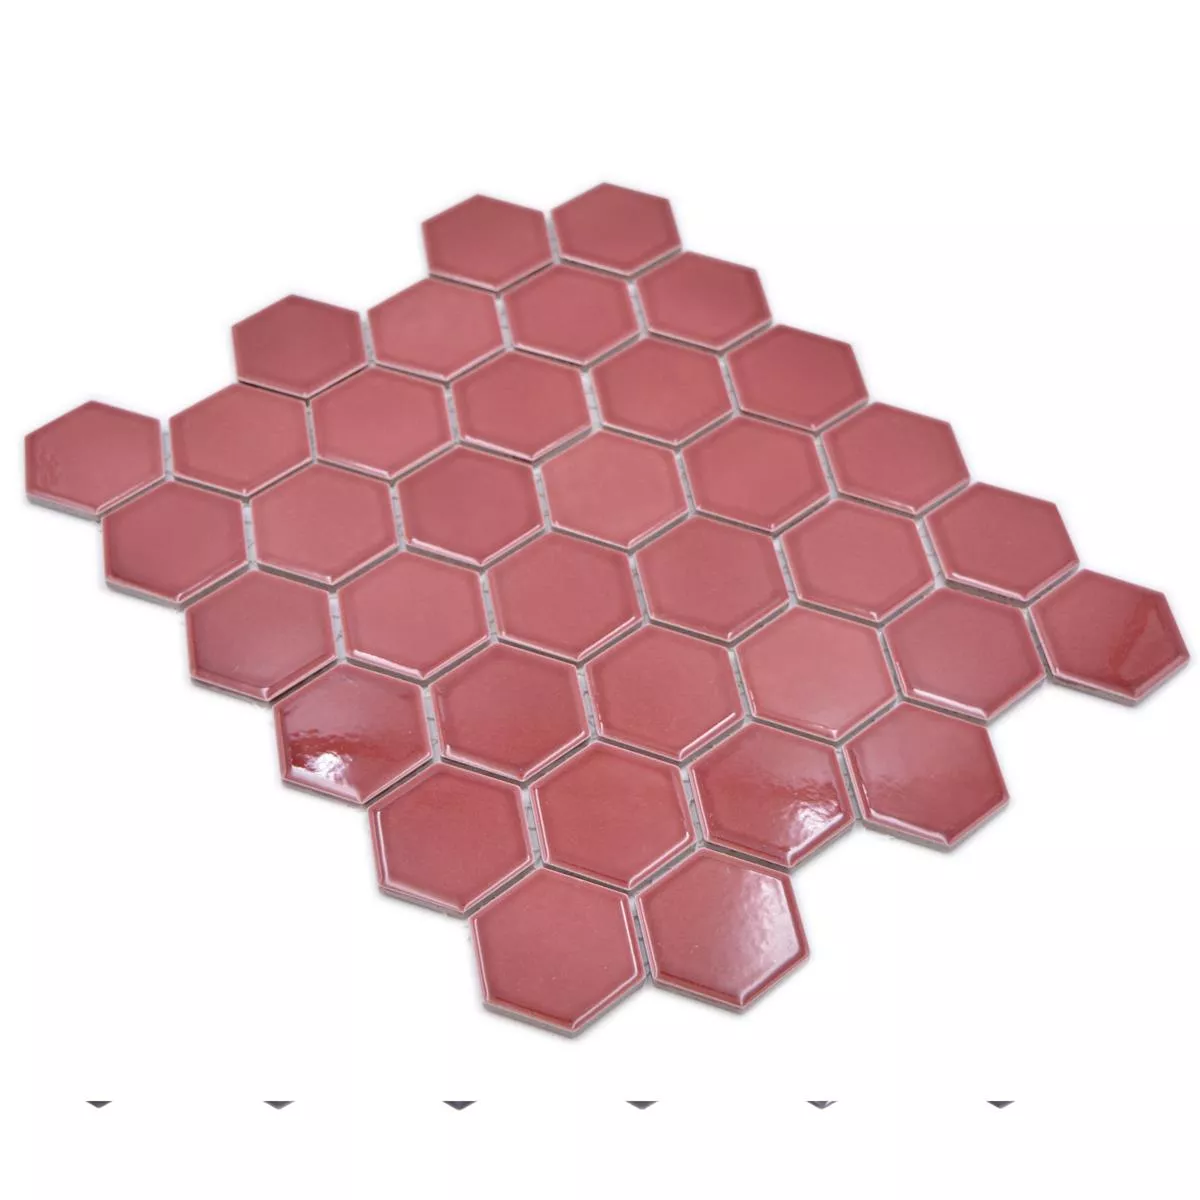 Keramisk Mosaikk Salomon Sekskant Bordeaux Rød H51